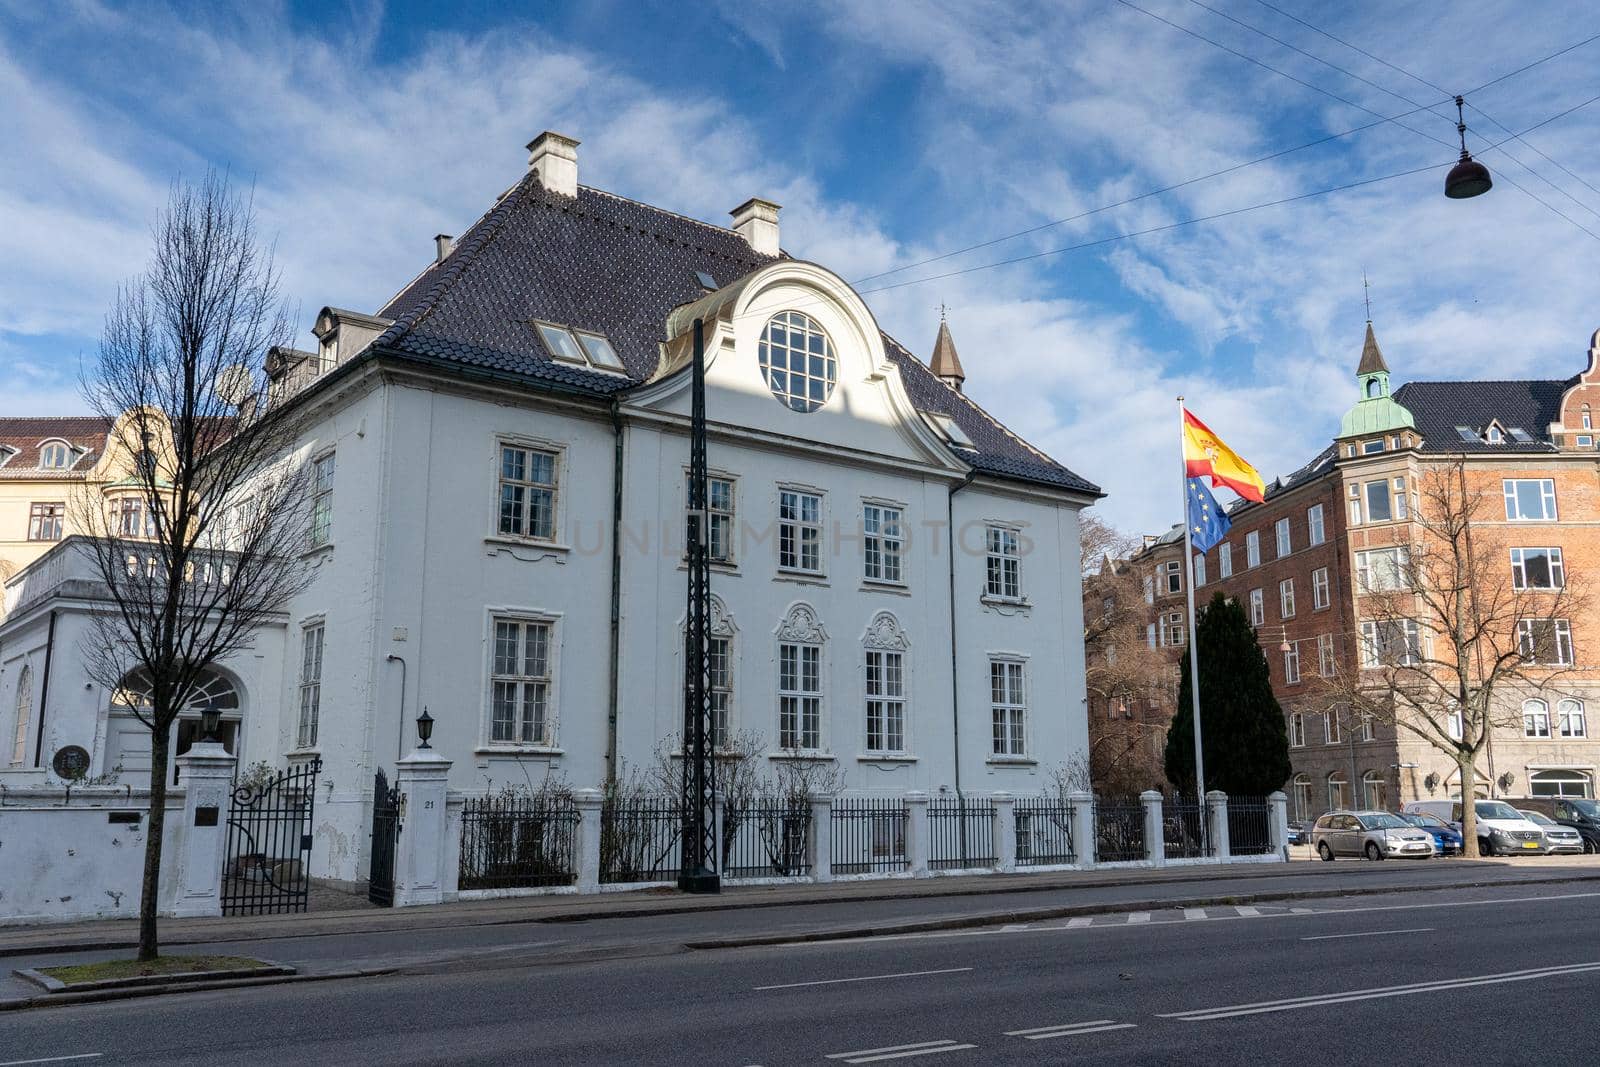 Embassy of Spain in Copenhagen, Denmark by oliverfoerstner